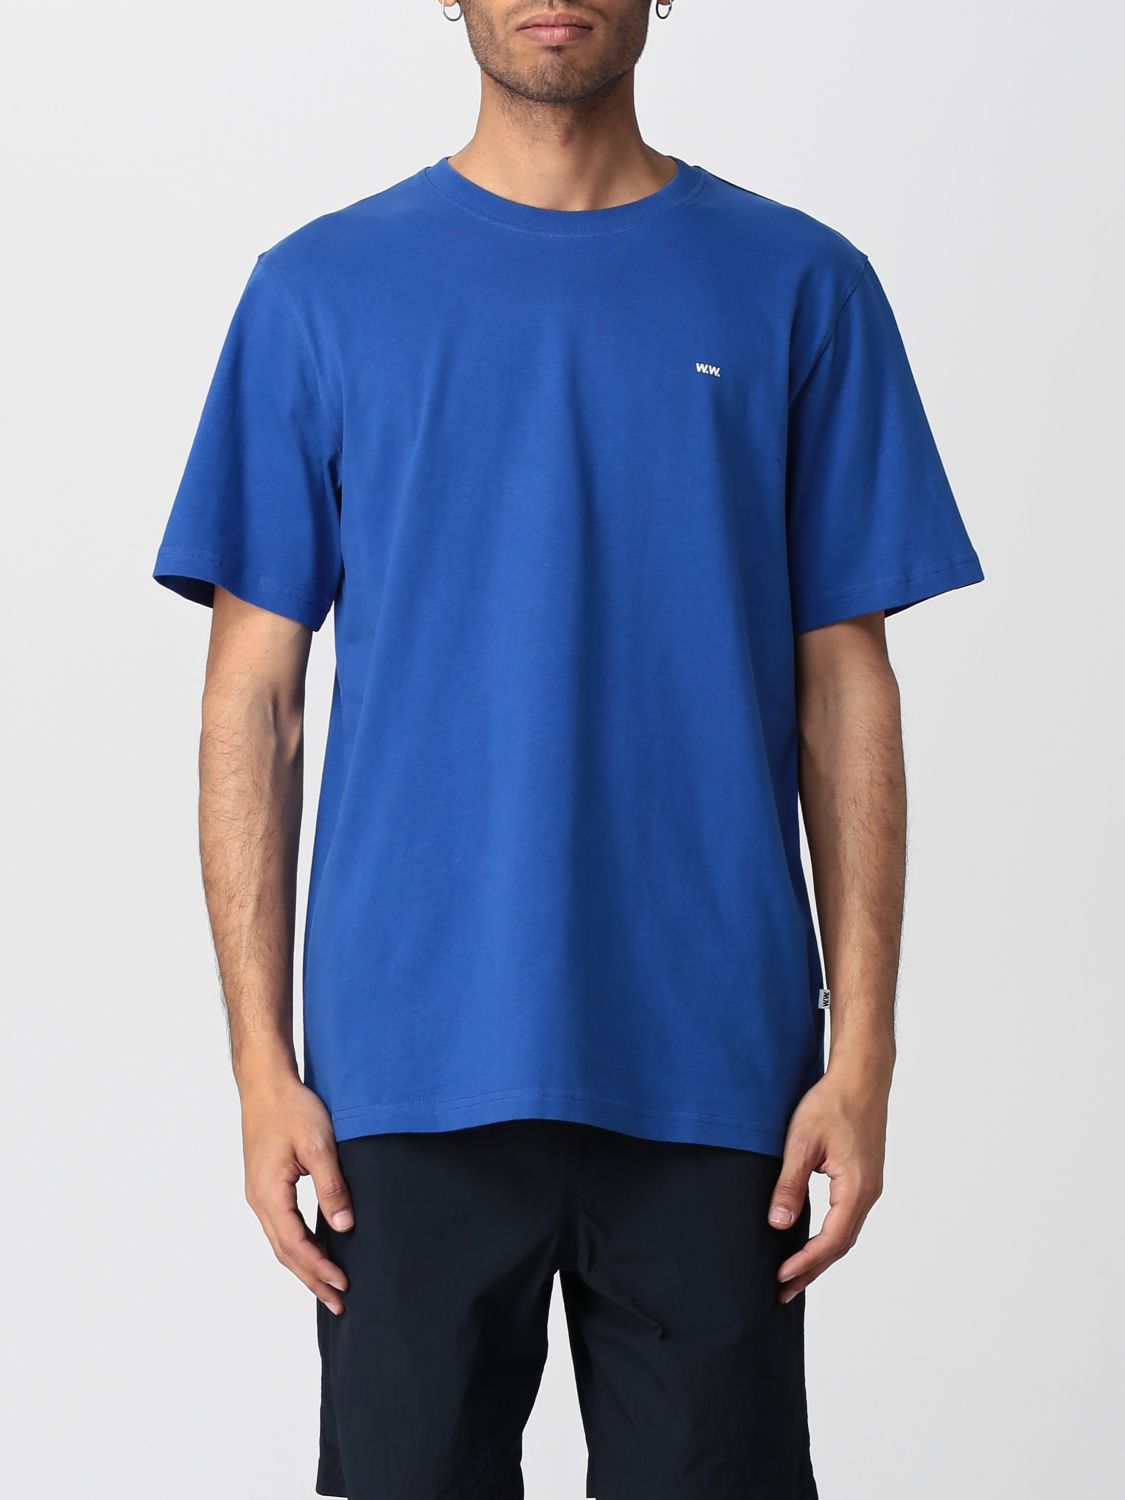 WOOD WOOD: t-shirt for man - Blue | Wood Wood t-shirt 123157002491 ...